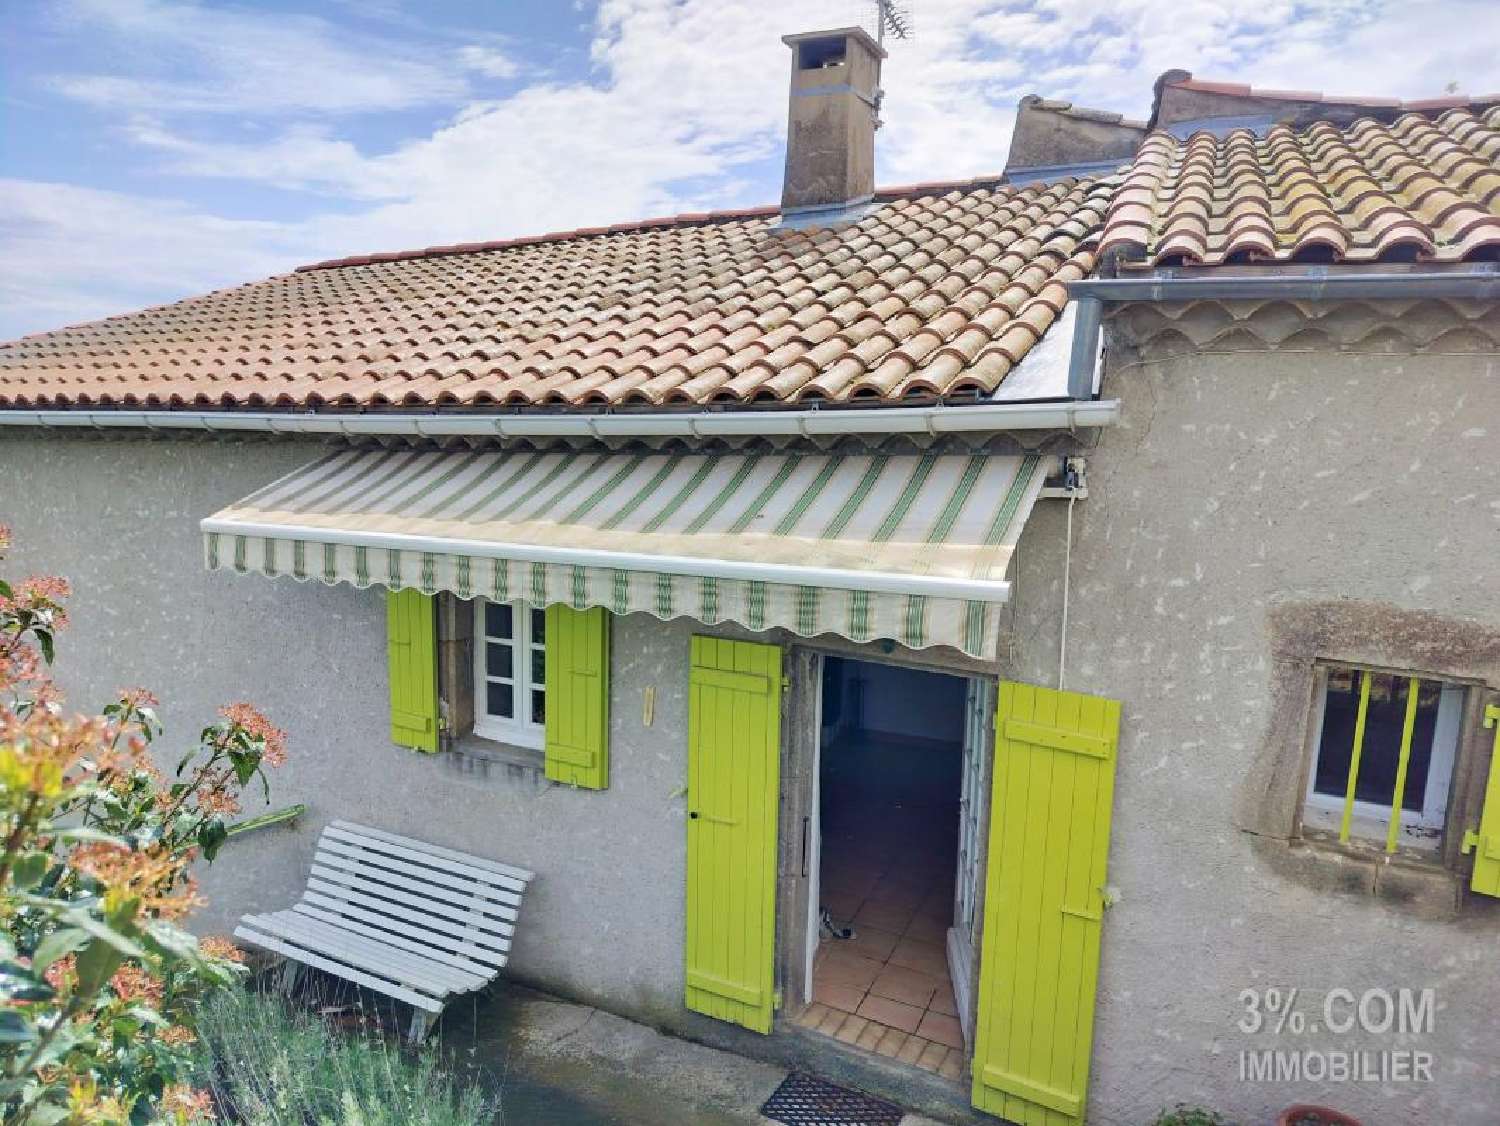  à vendre maison Pranles Ardèche 3